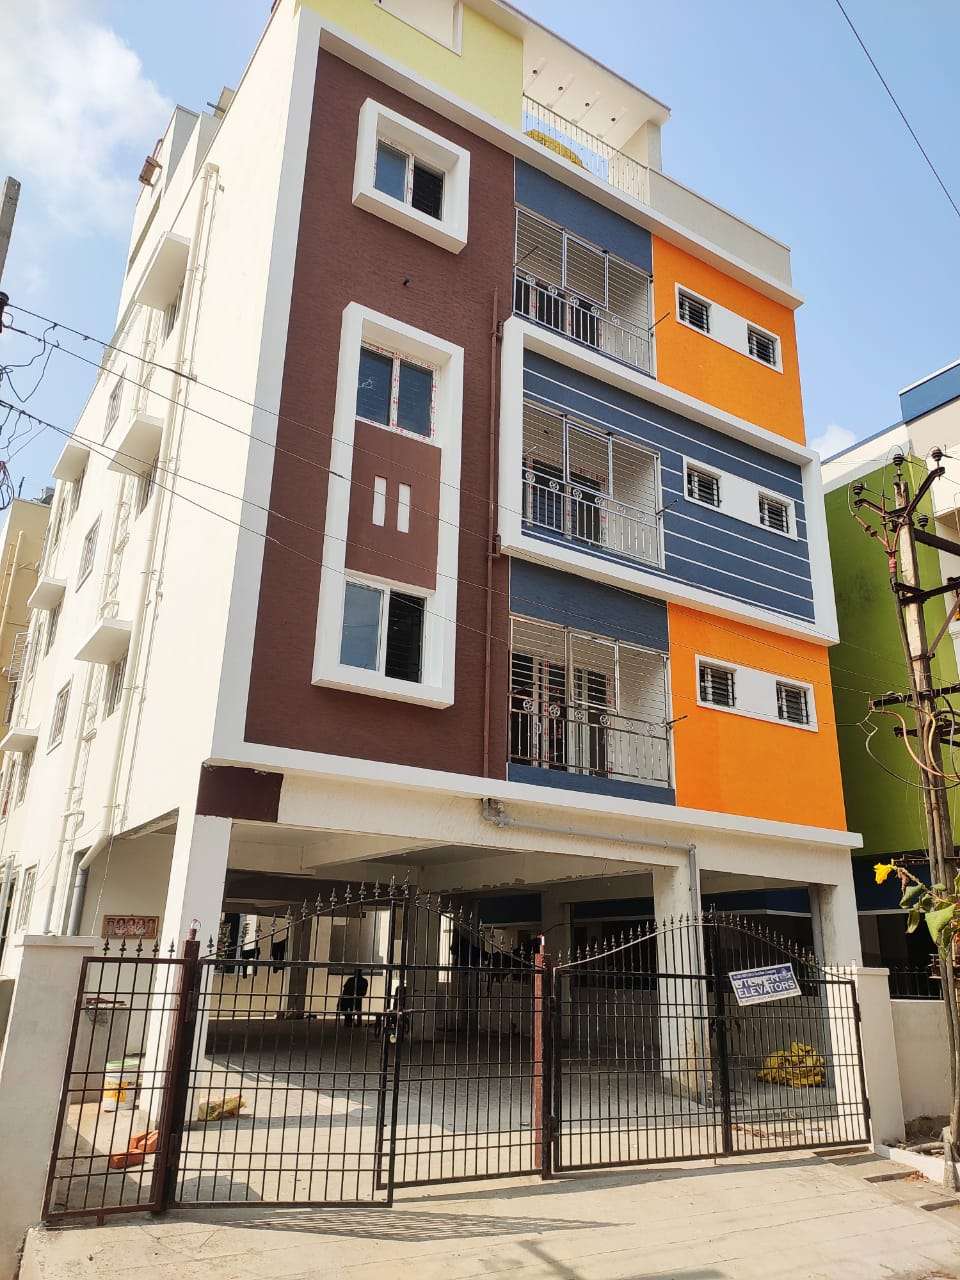 2 BHK Flats for sale in Loganathan Nagar Chennai - 3+ 2 BHK Flats in  Loganathan Nagar Chennai